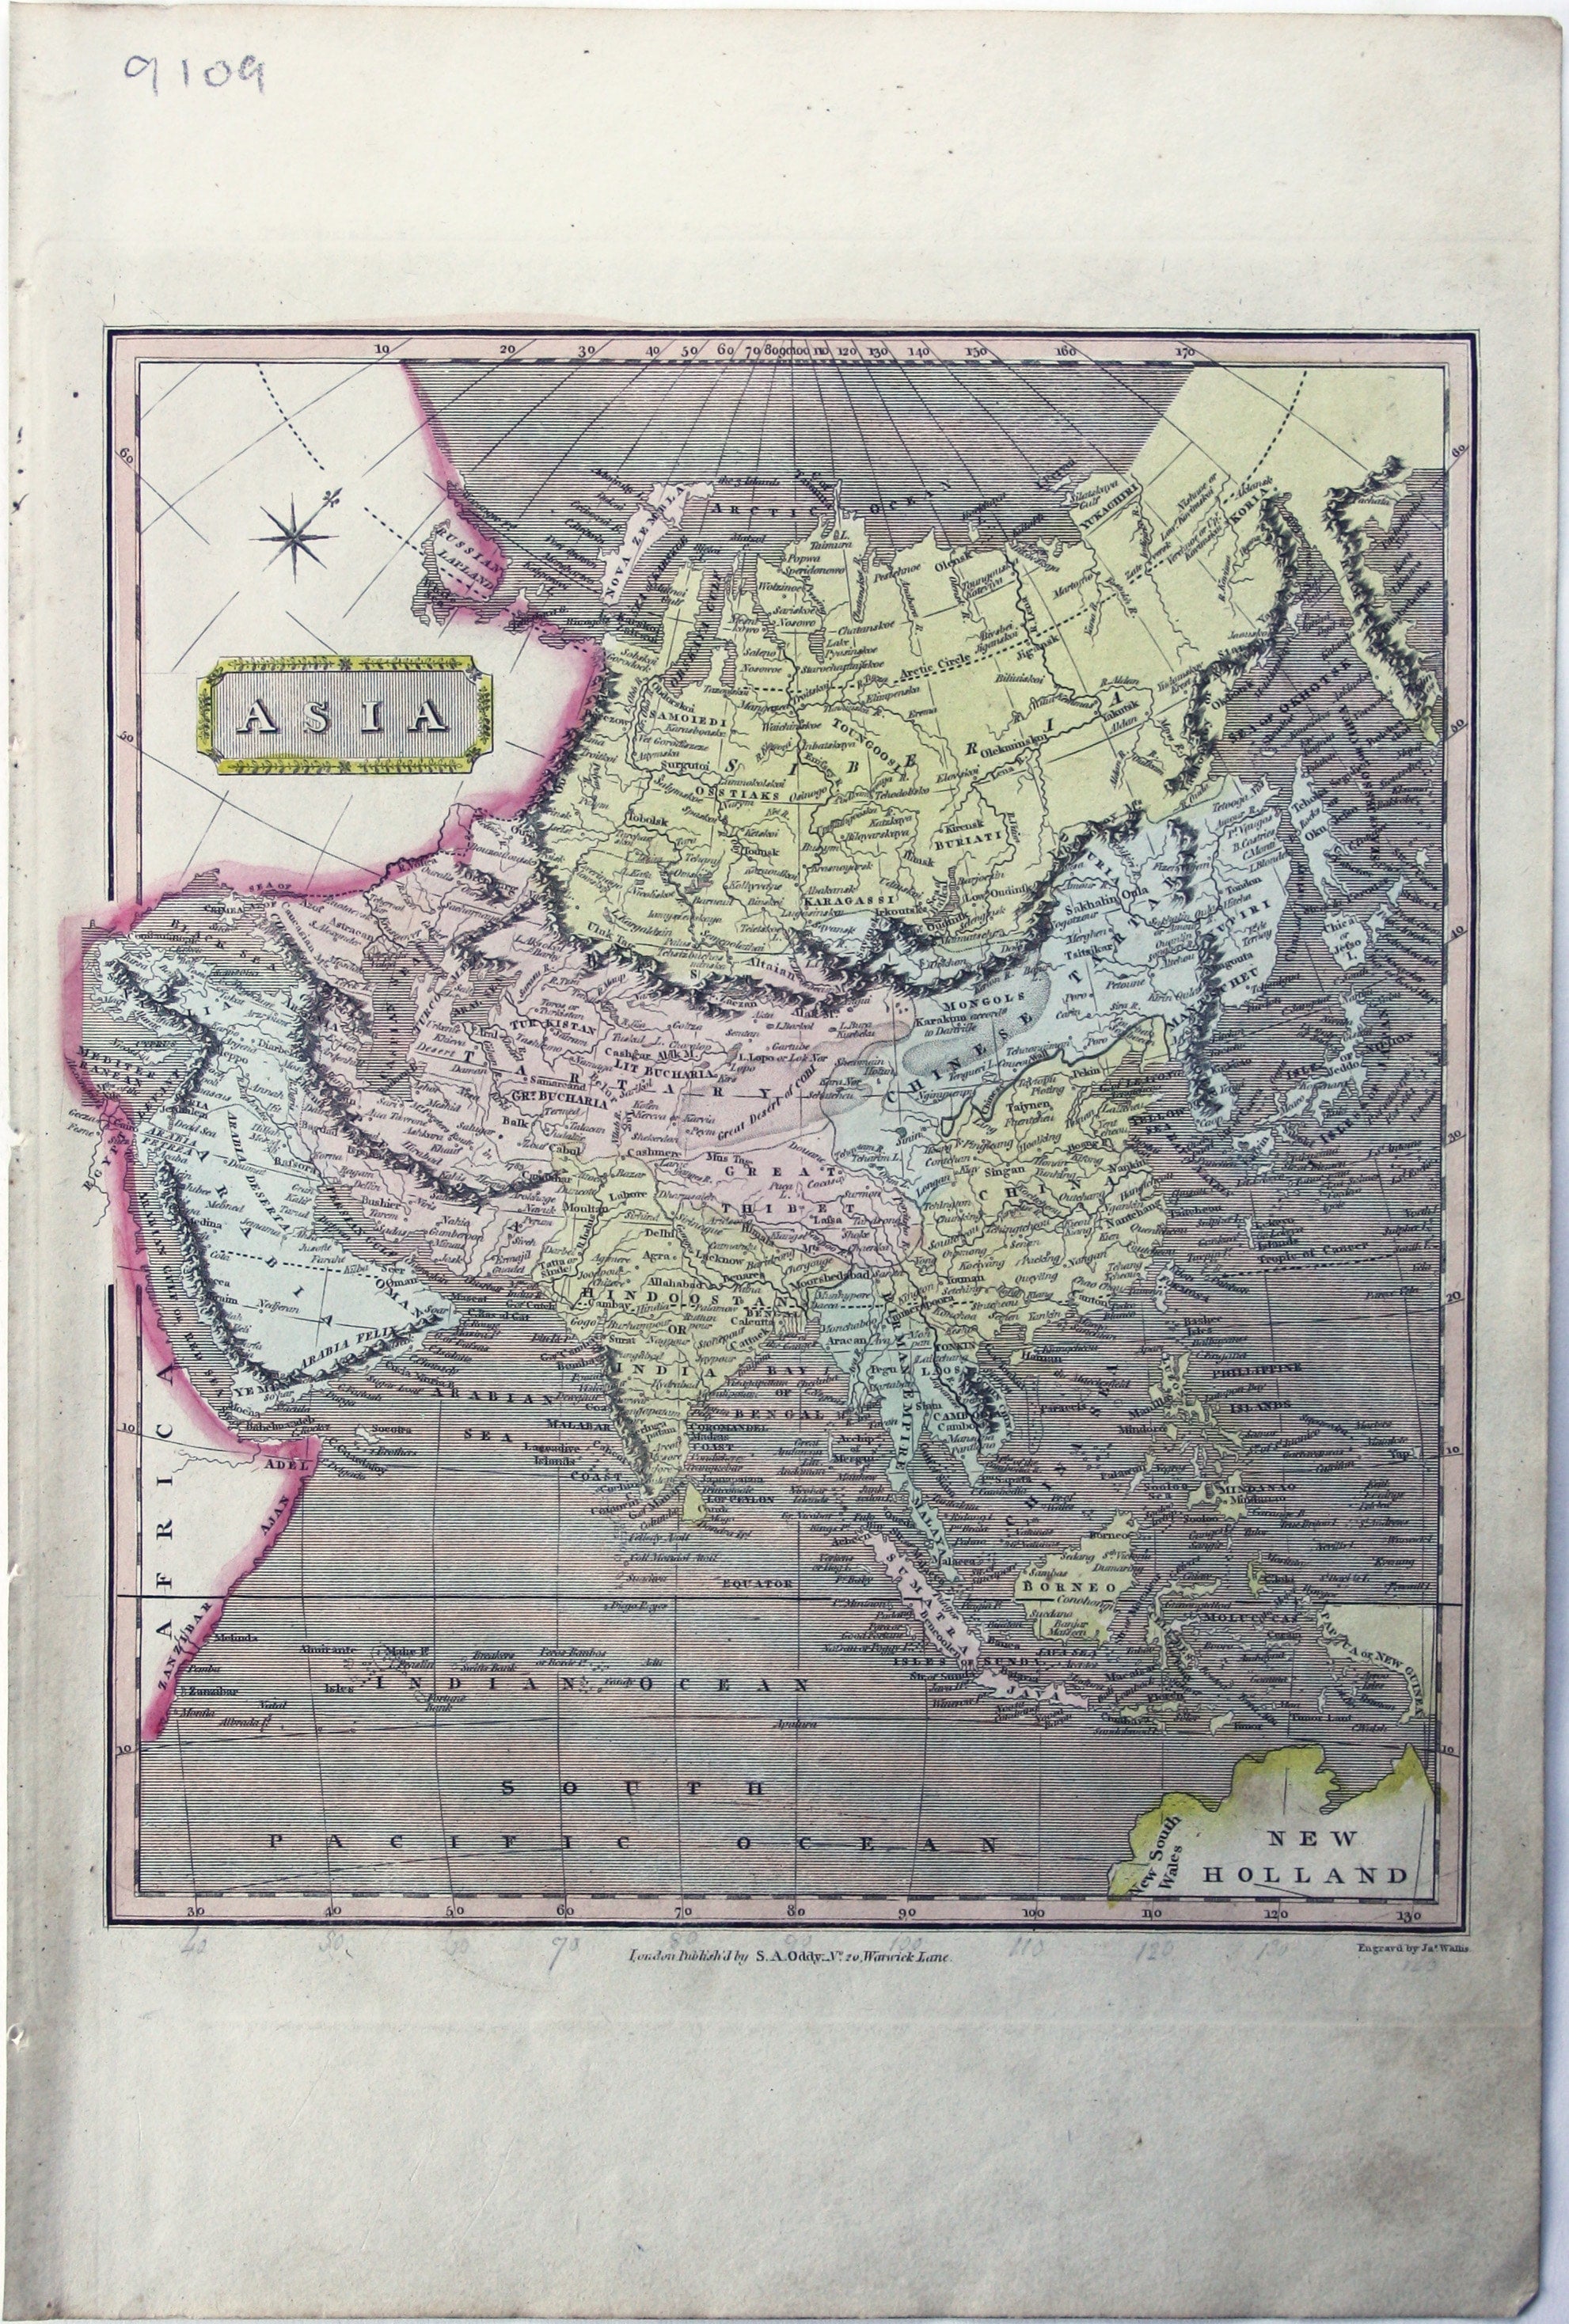 Wallis’ Map of Asia